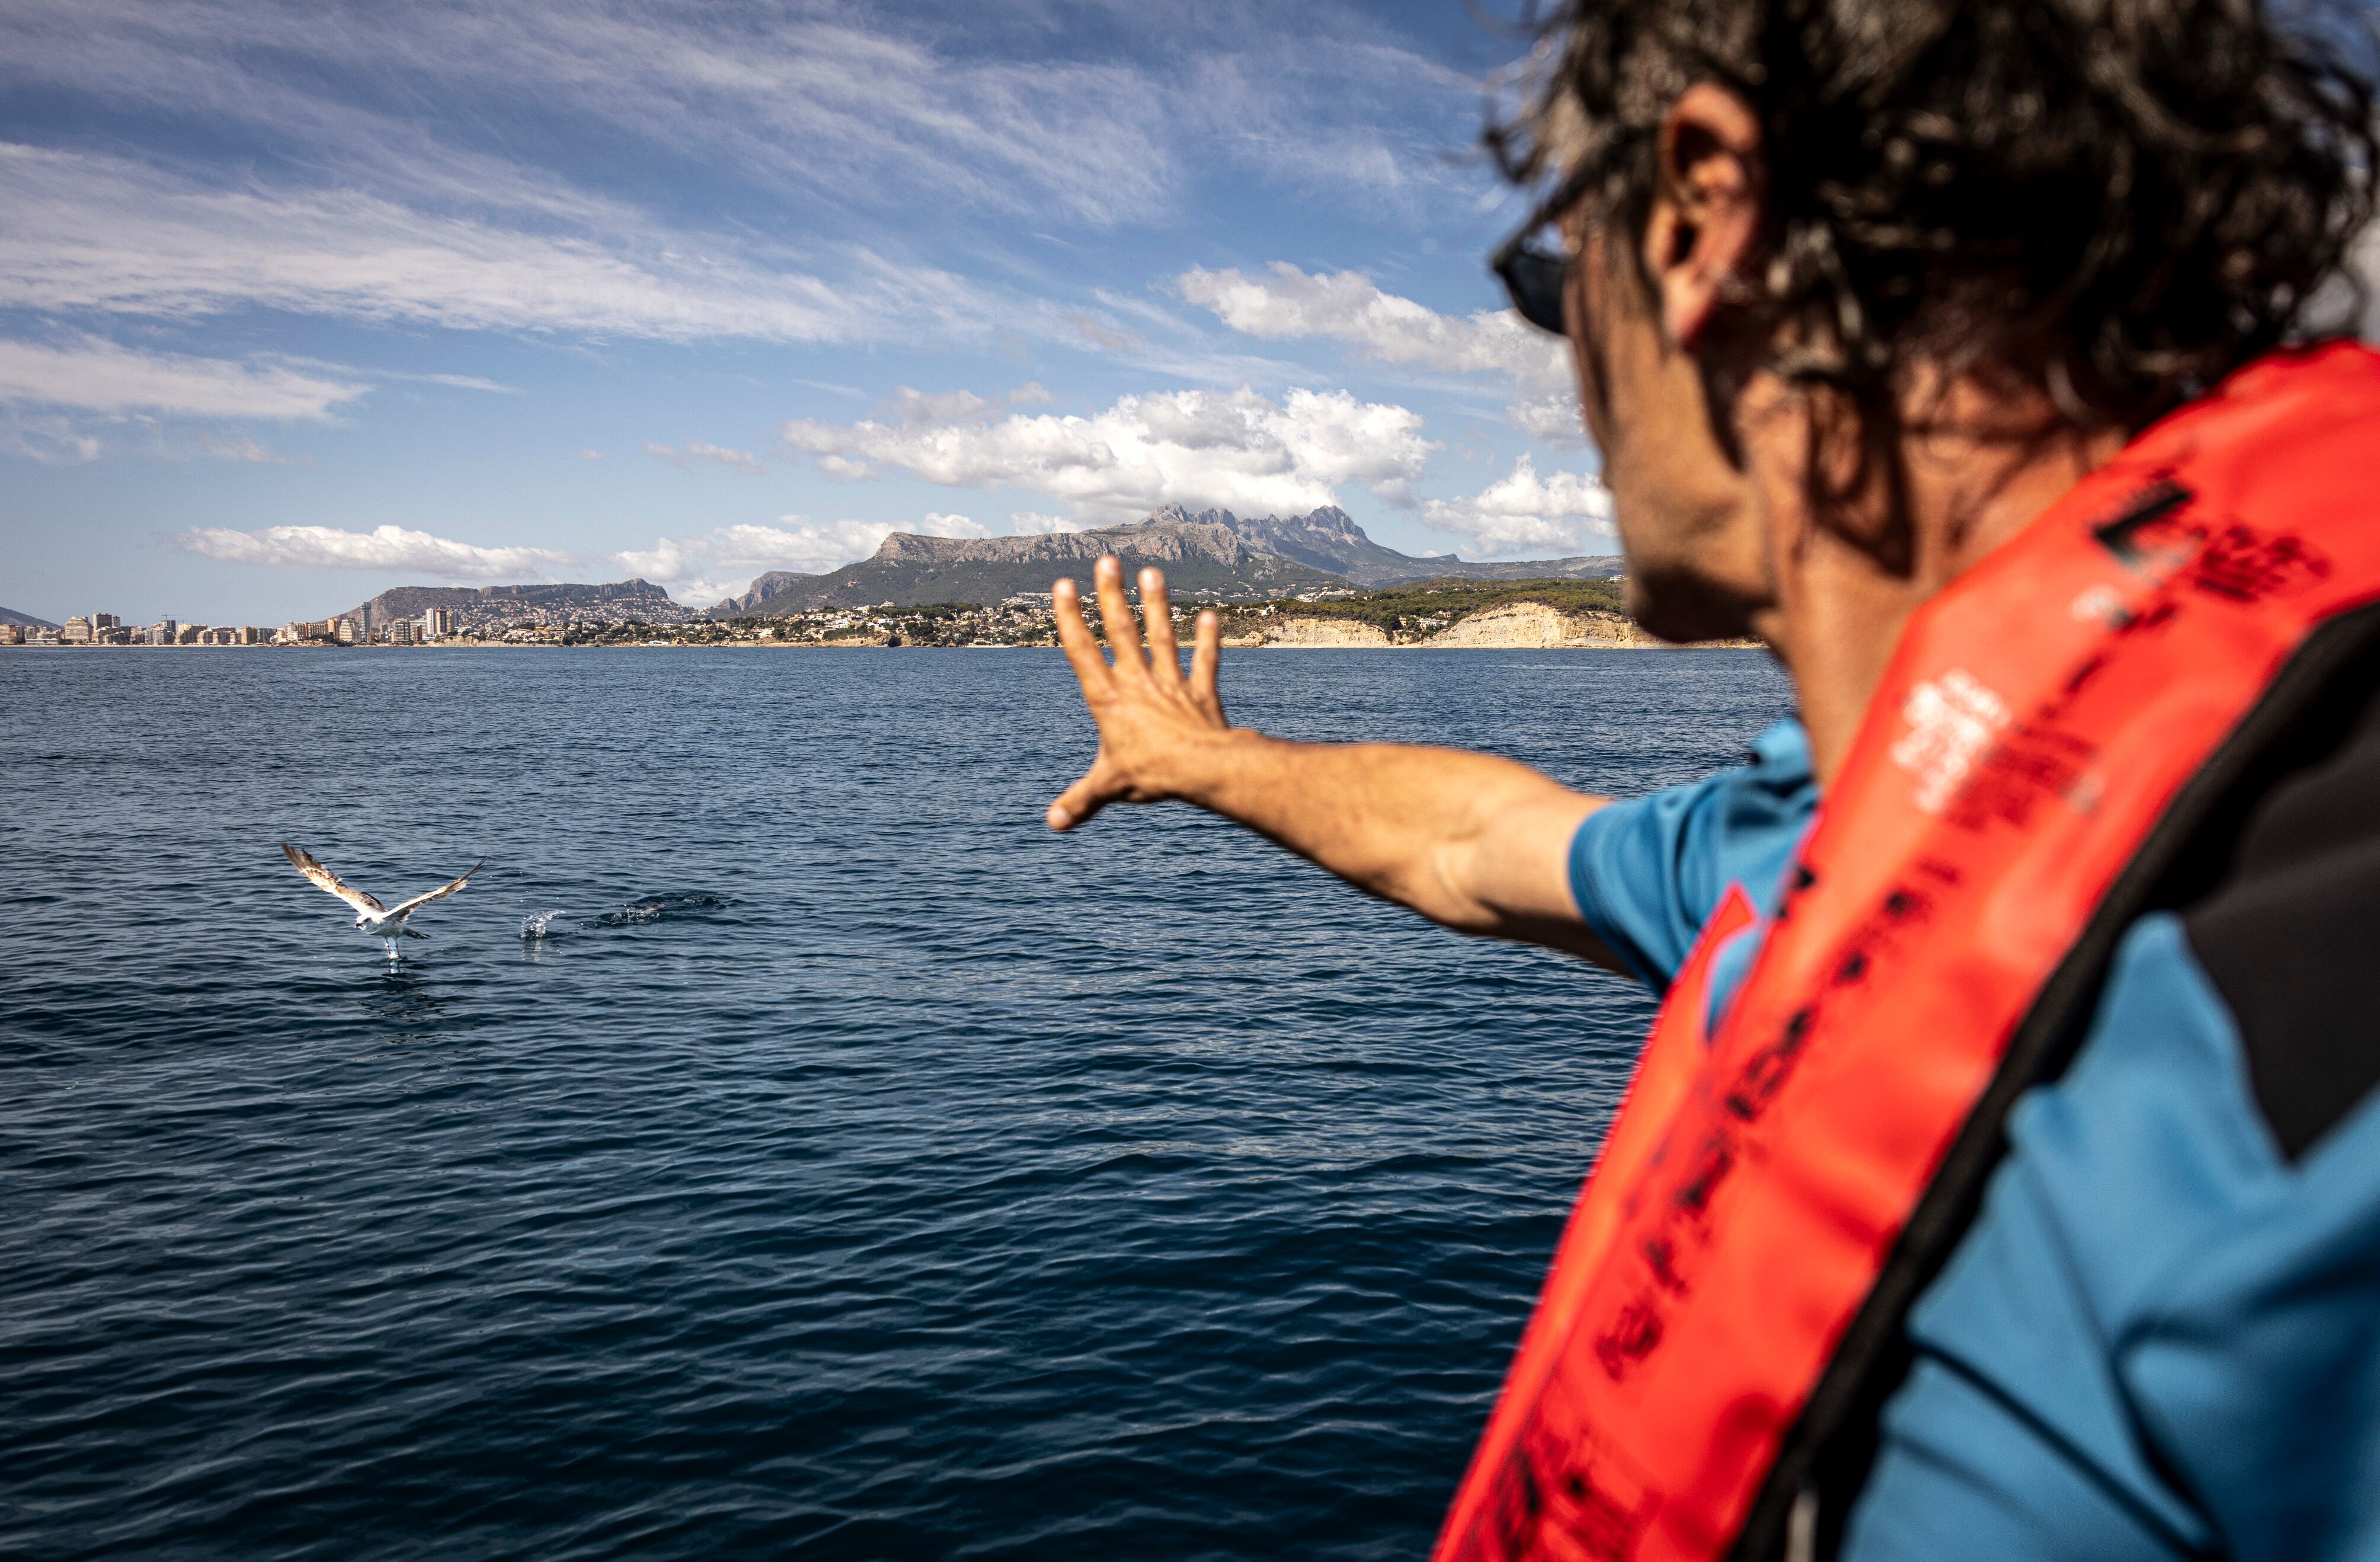 El agente medioambiental Mariano Bermejo observa una gaviota. Junto a Carlos Pascual, forman el equipo de agentes que se encarga de los espacios marinos de toda la Comunidad Valenciana.